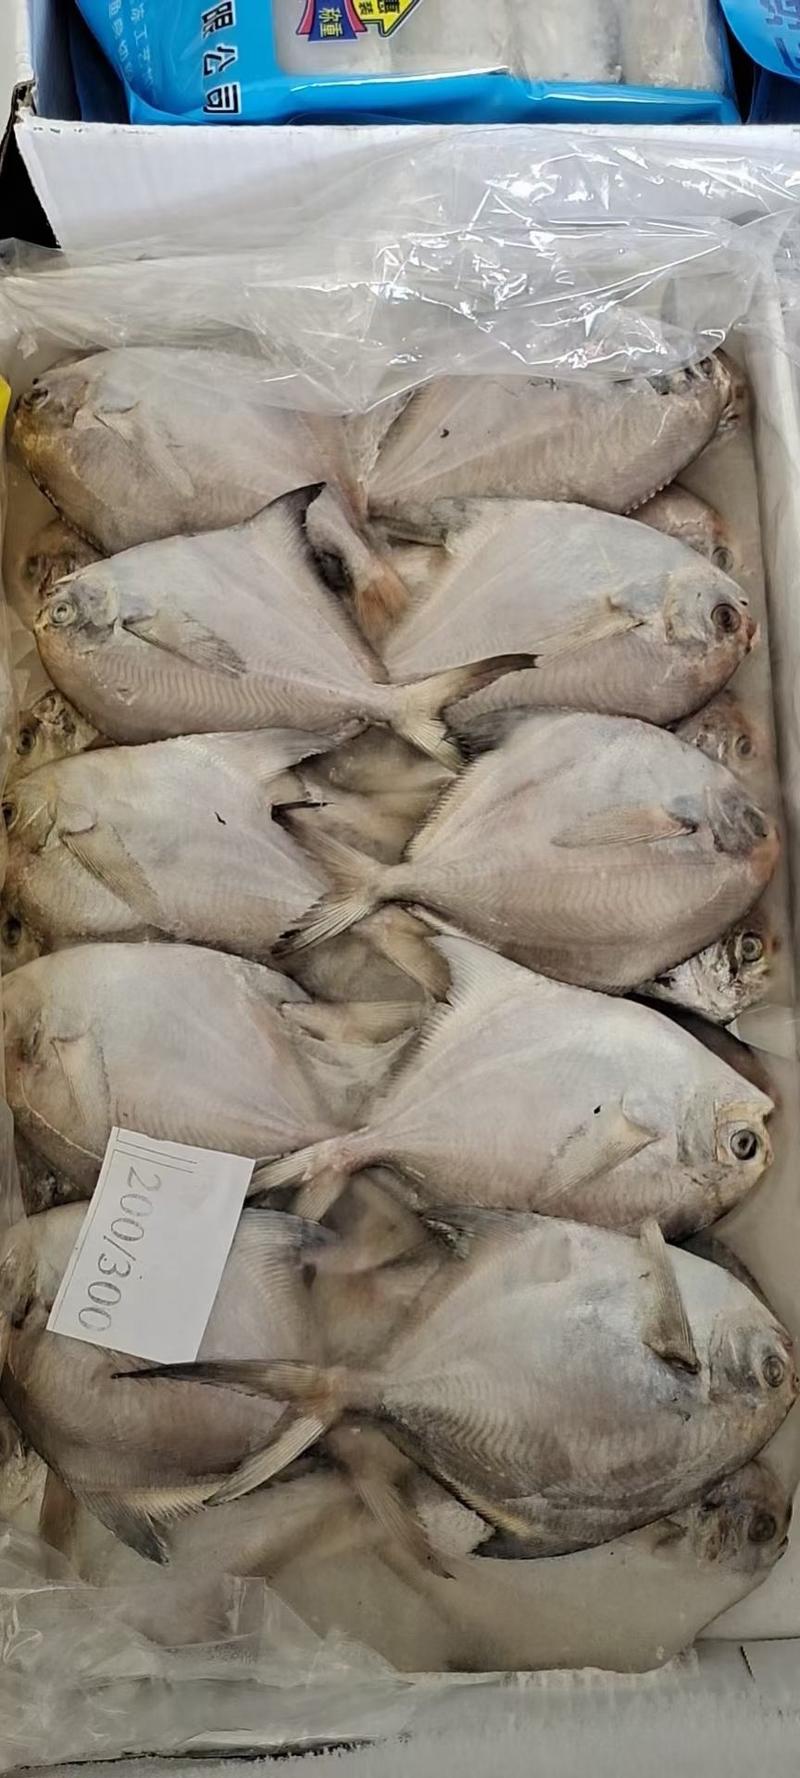 东海白鲳鱼200件起批全国各地均可直达一吨起批